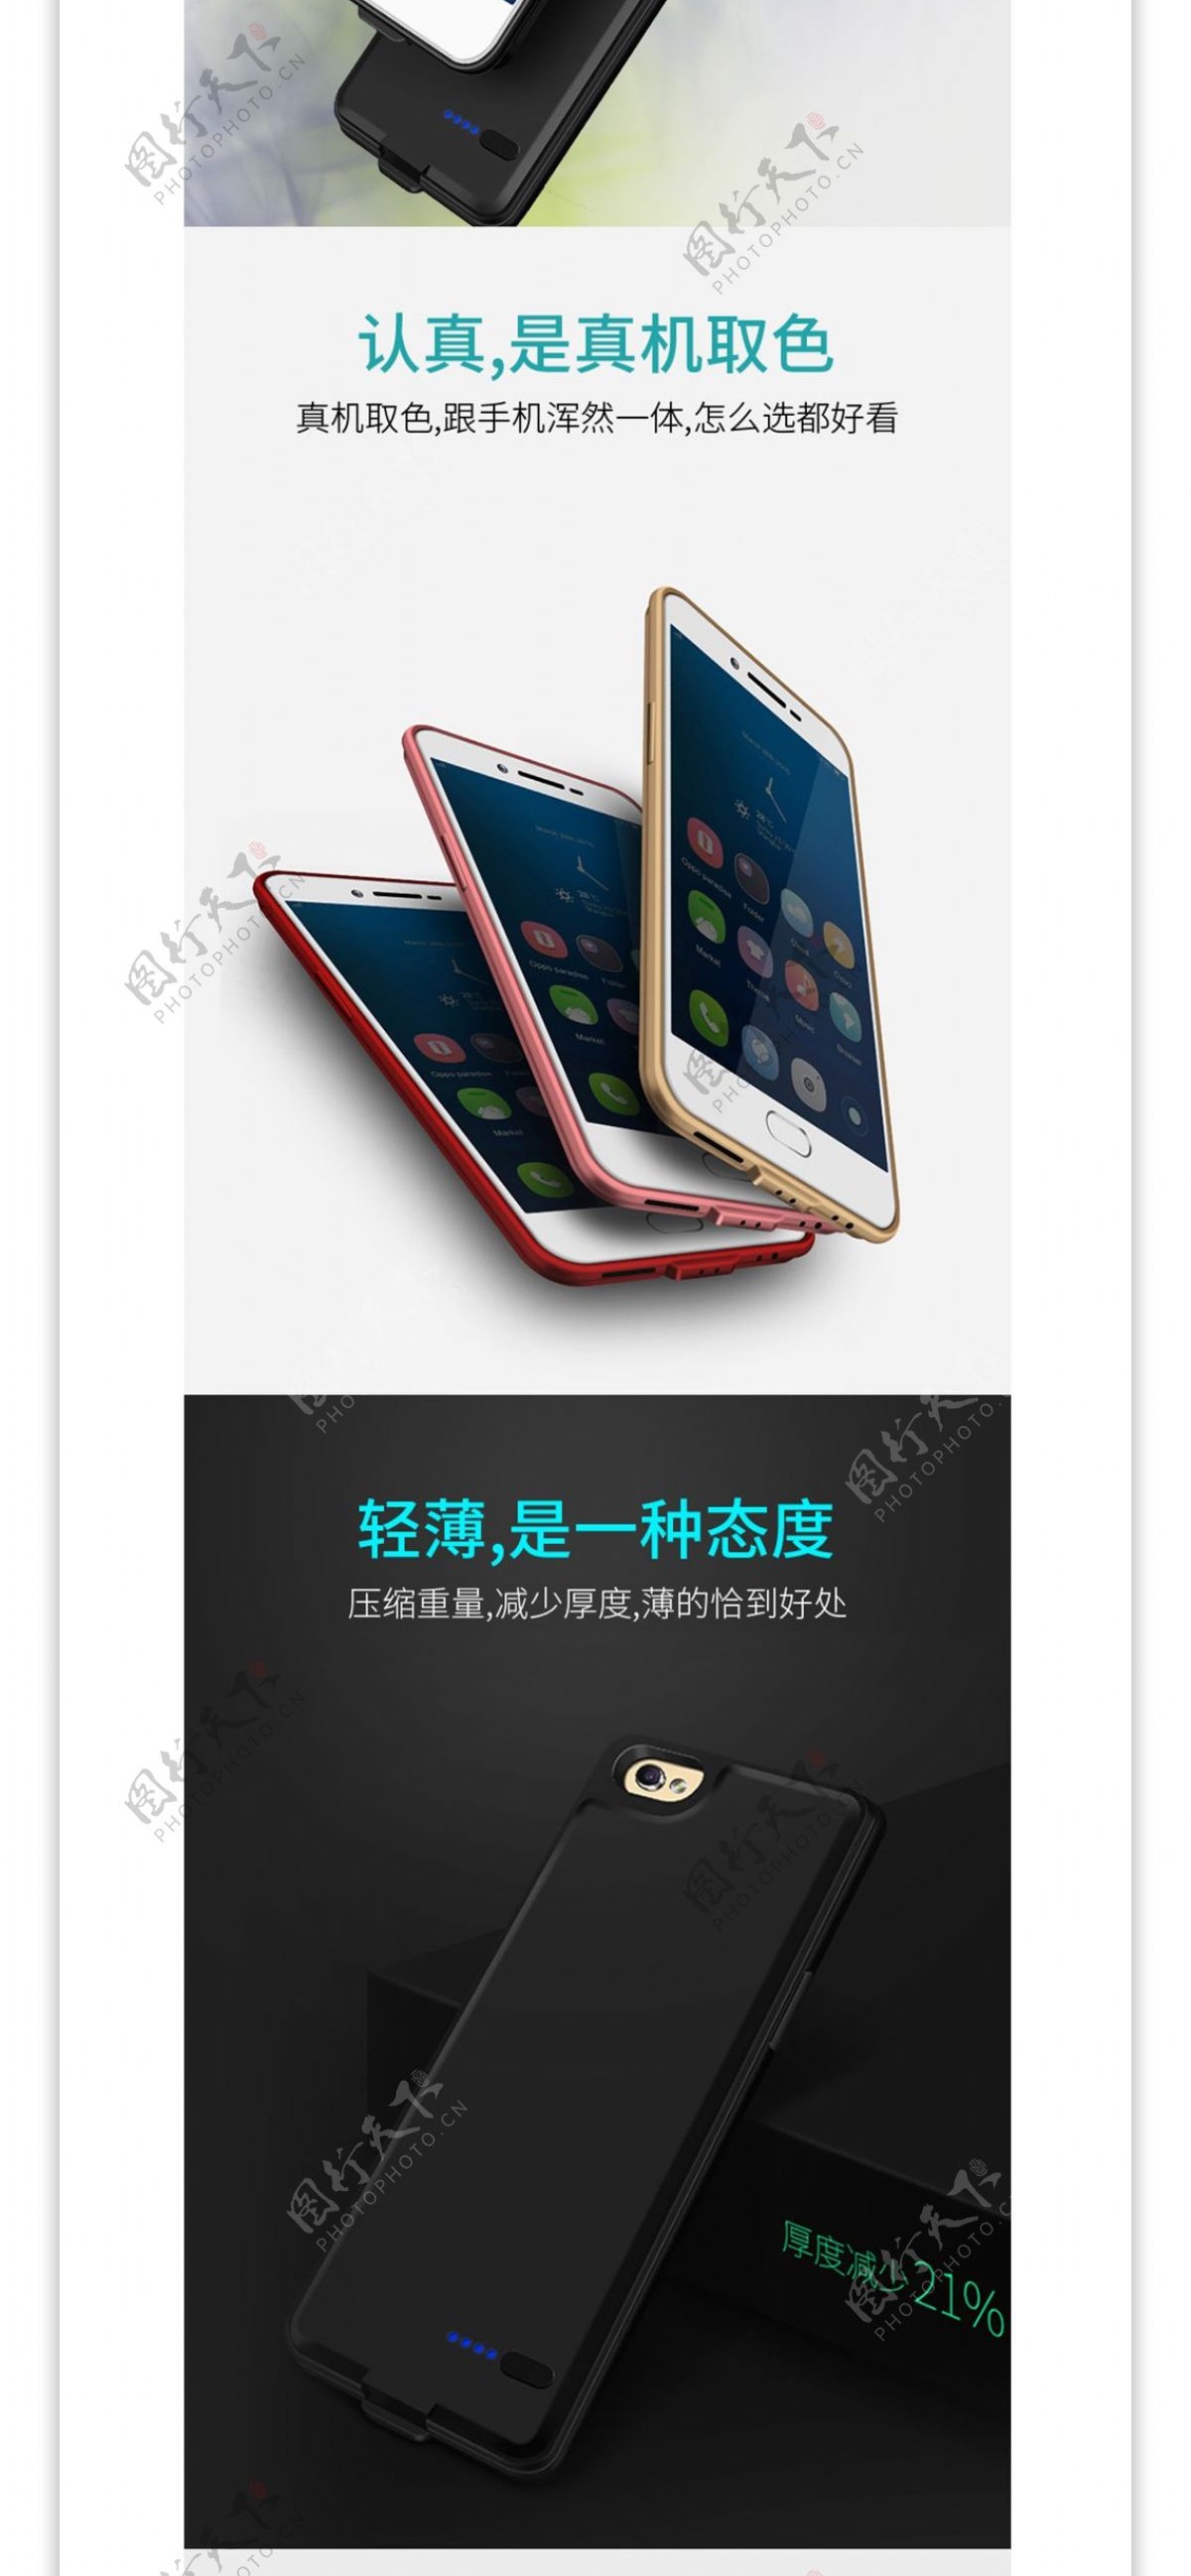 3C数码炫酷手机背夹充电手机壳详情页模板